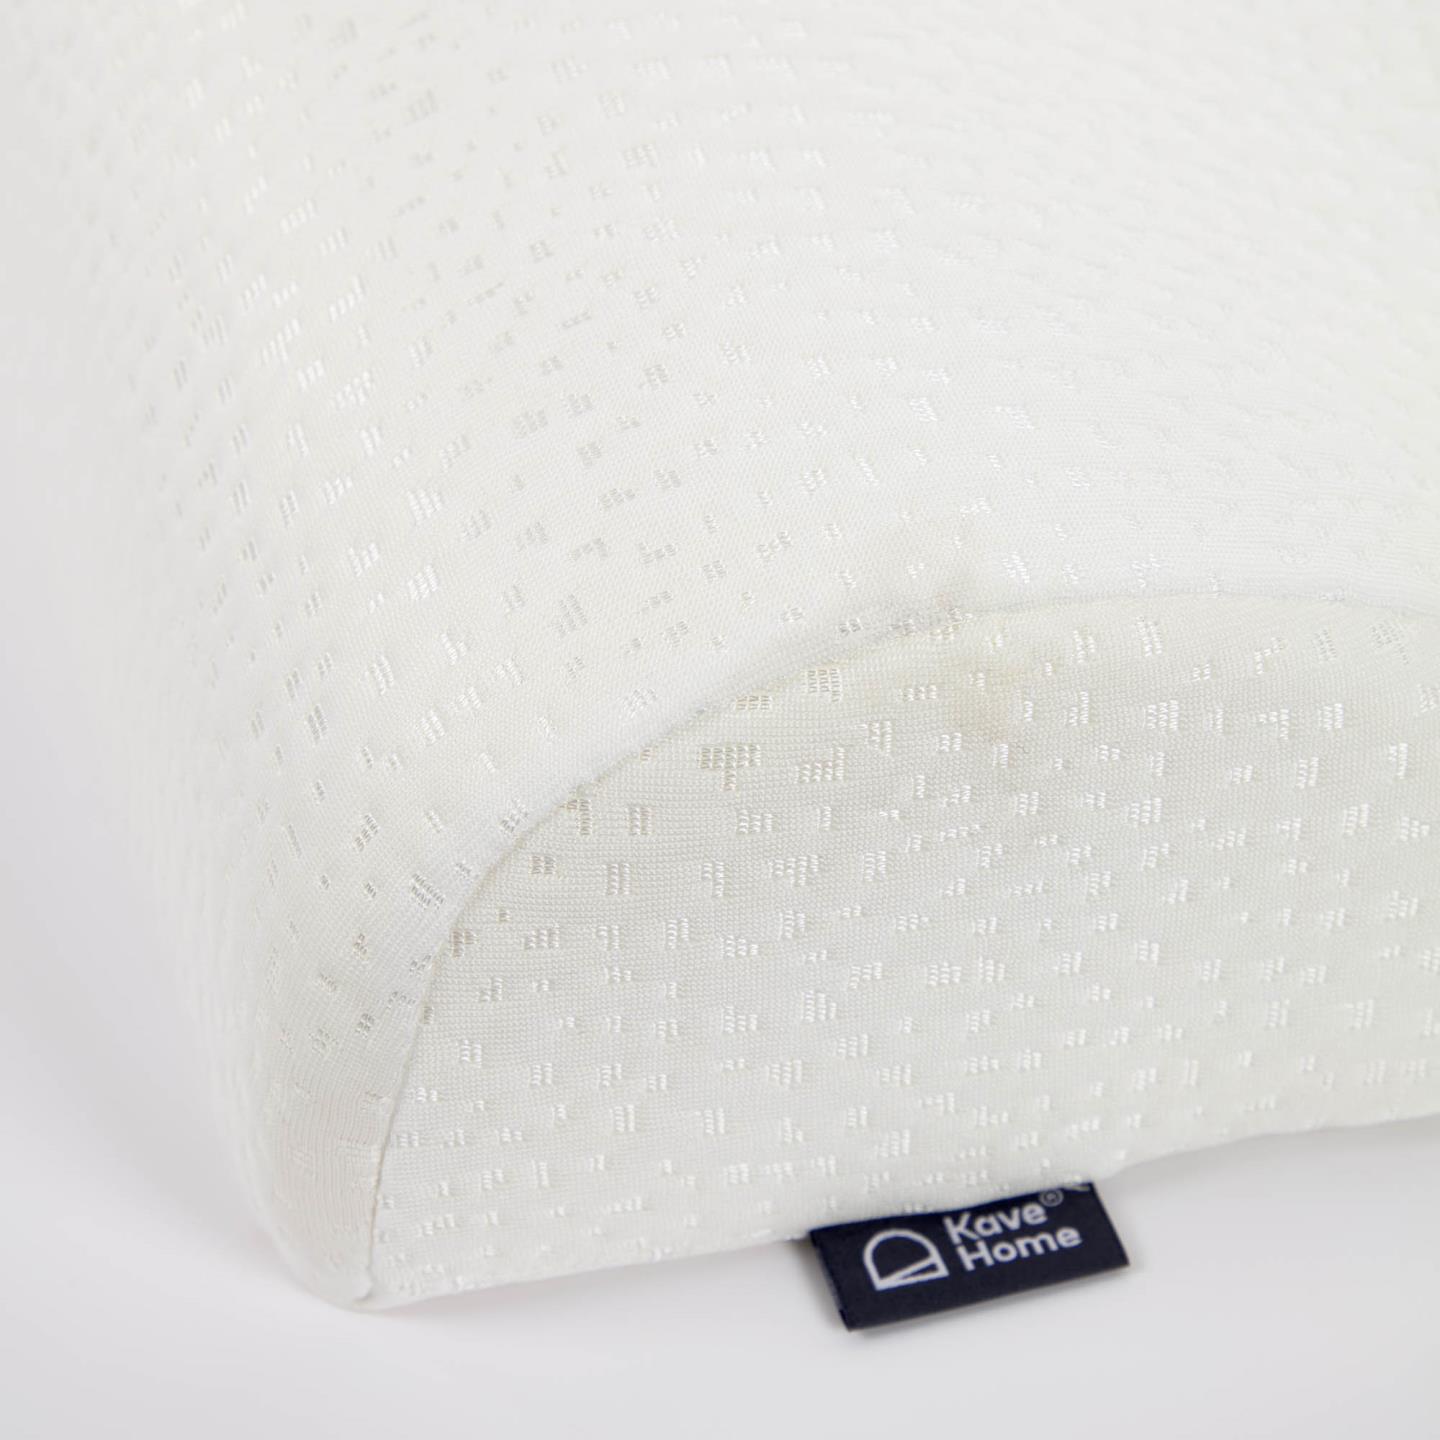 Поддерживающая вязкоупругая подушка Chiaki 50 x 30 см